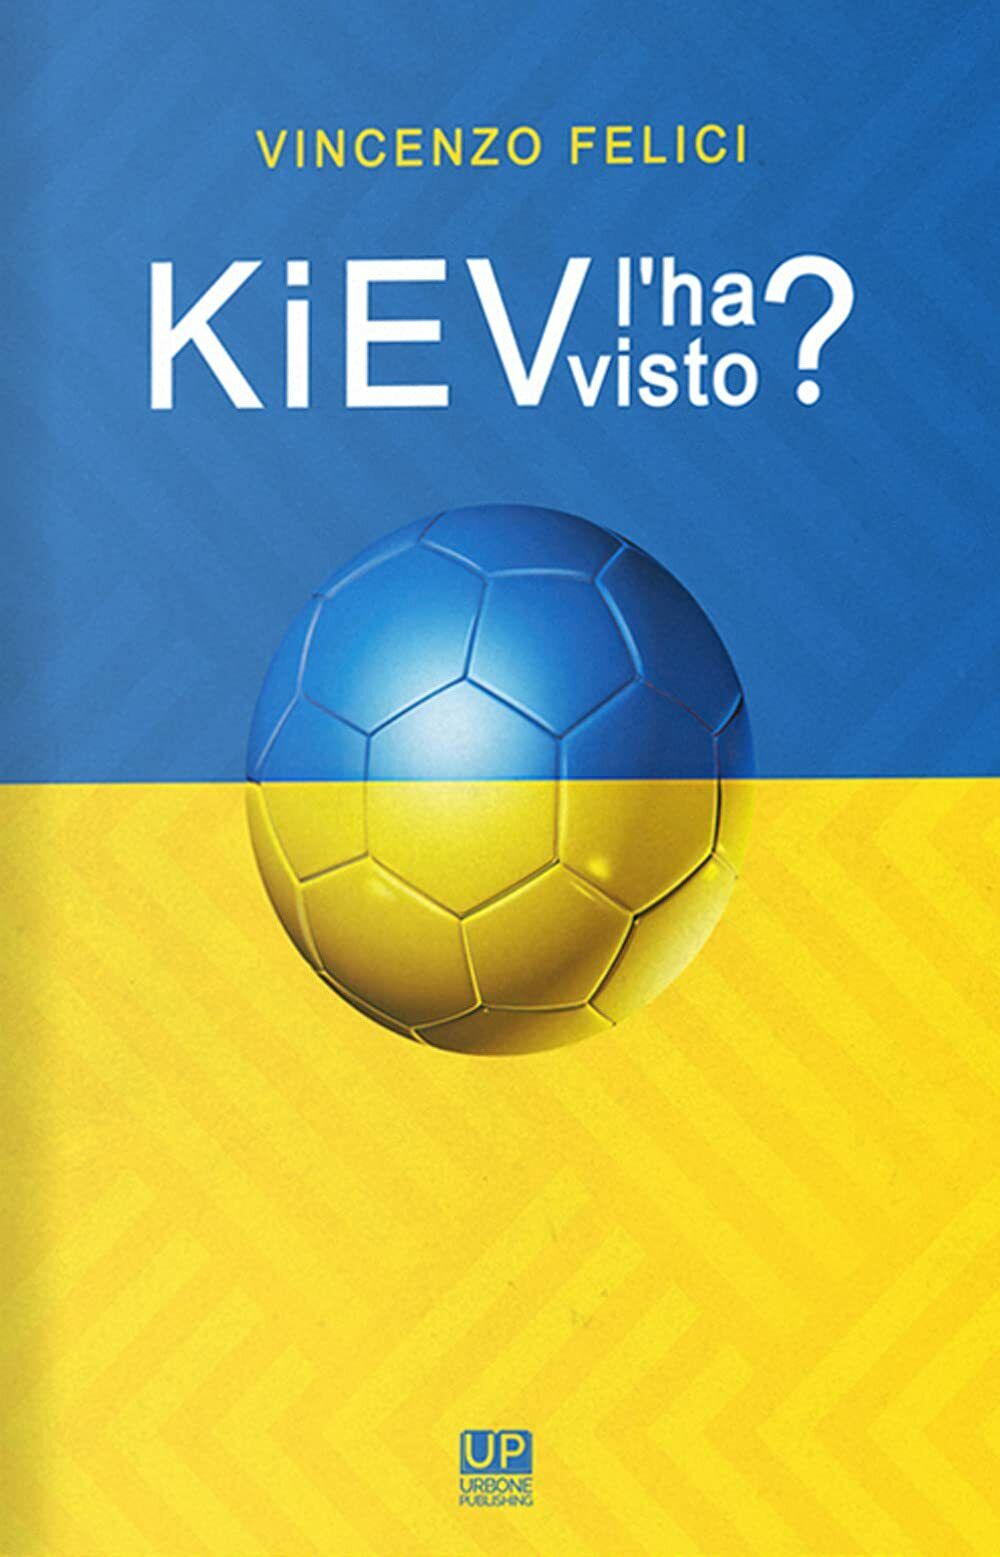 Kiev l'ha visto? - Vincenzo Felici - Gianluca Iuorio Urbone Publishing, 2021 libro usato